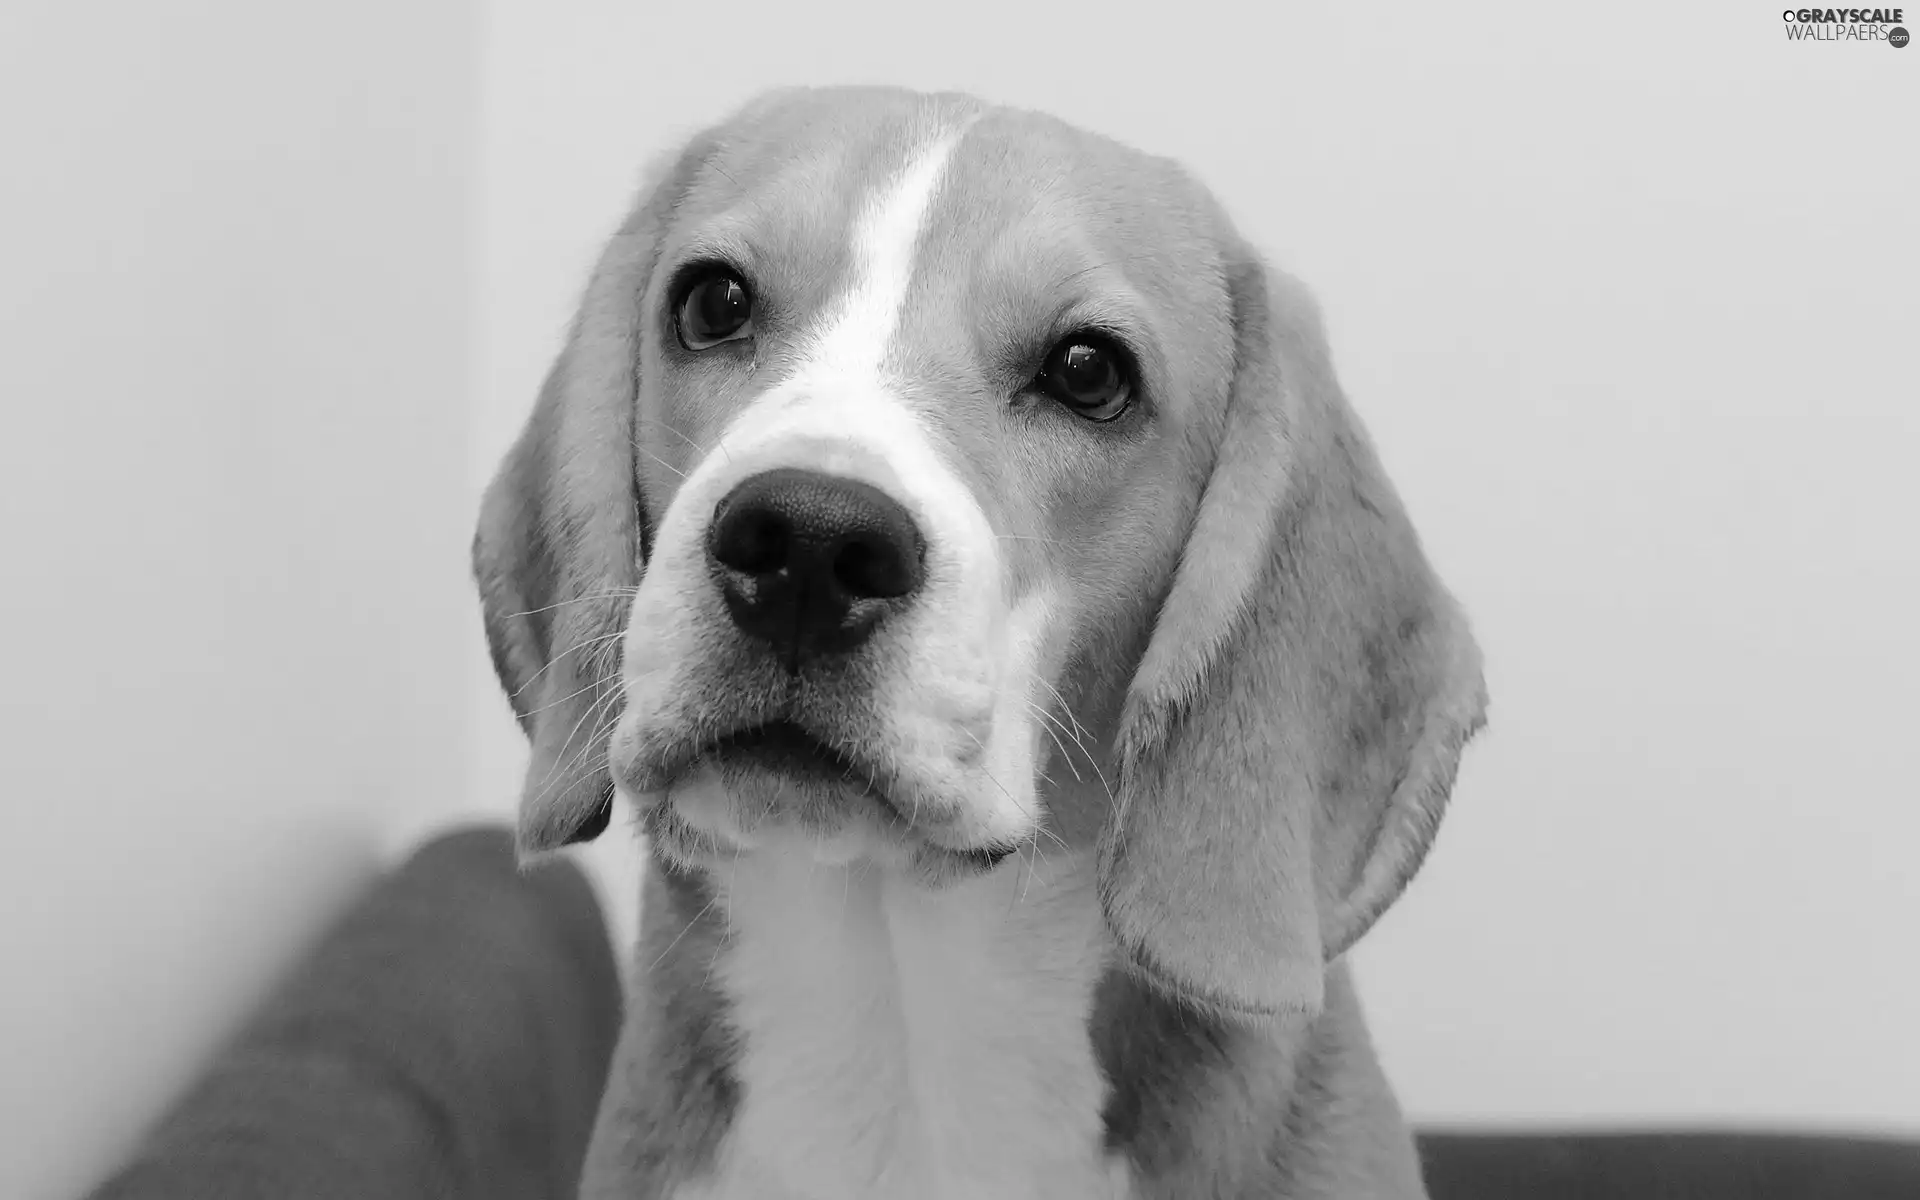 Beagle, muzzle